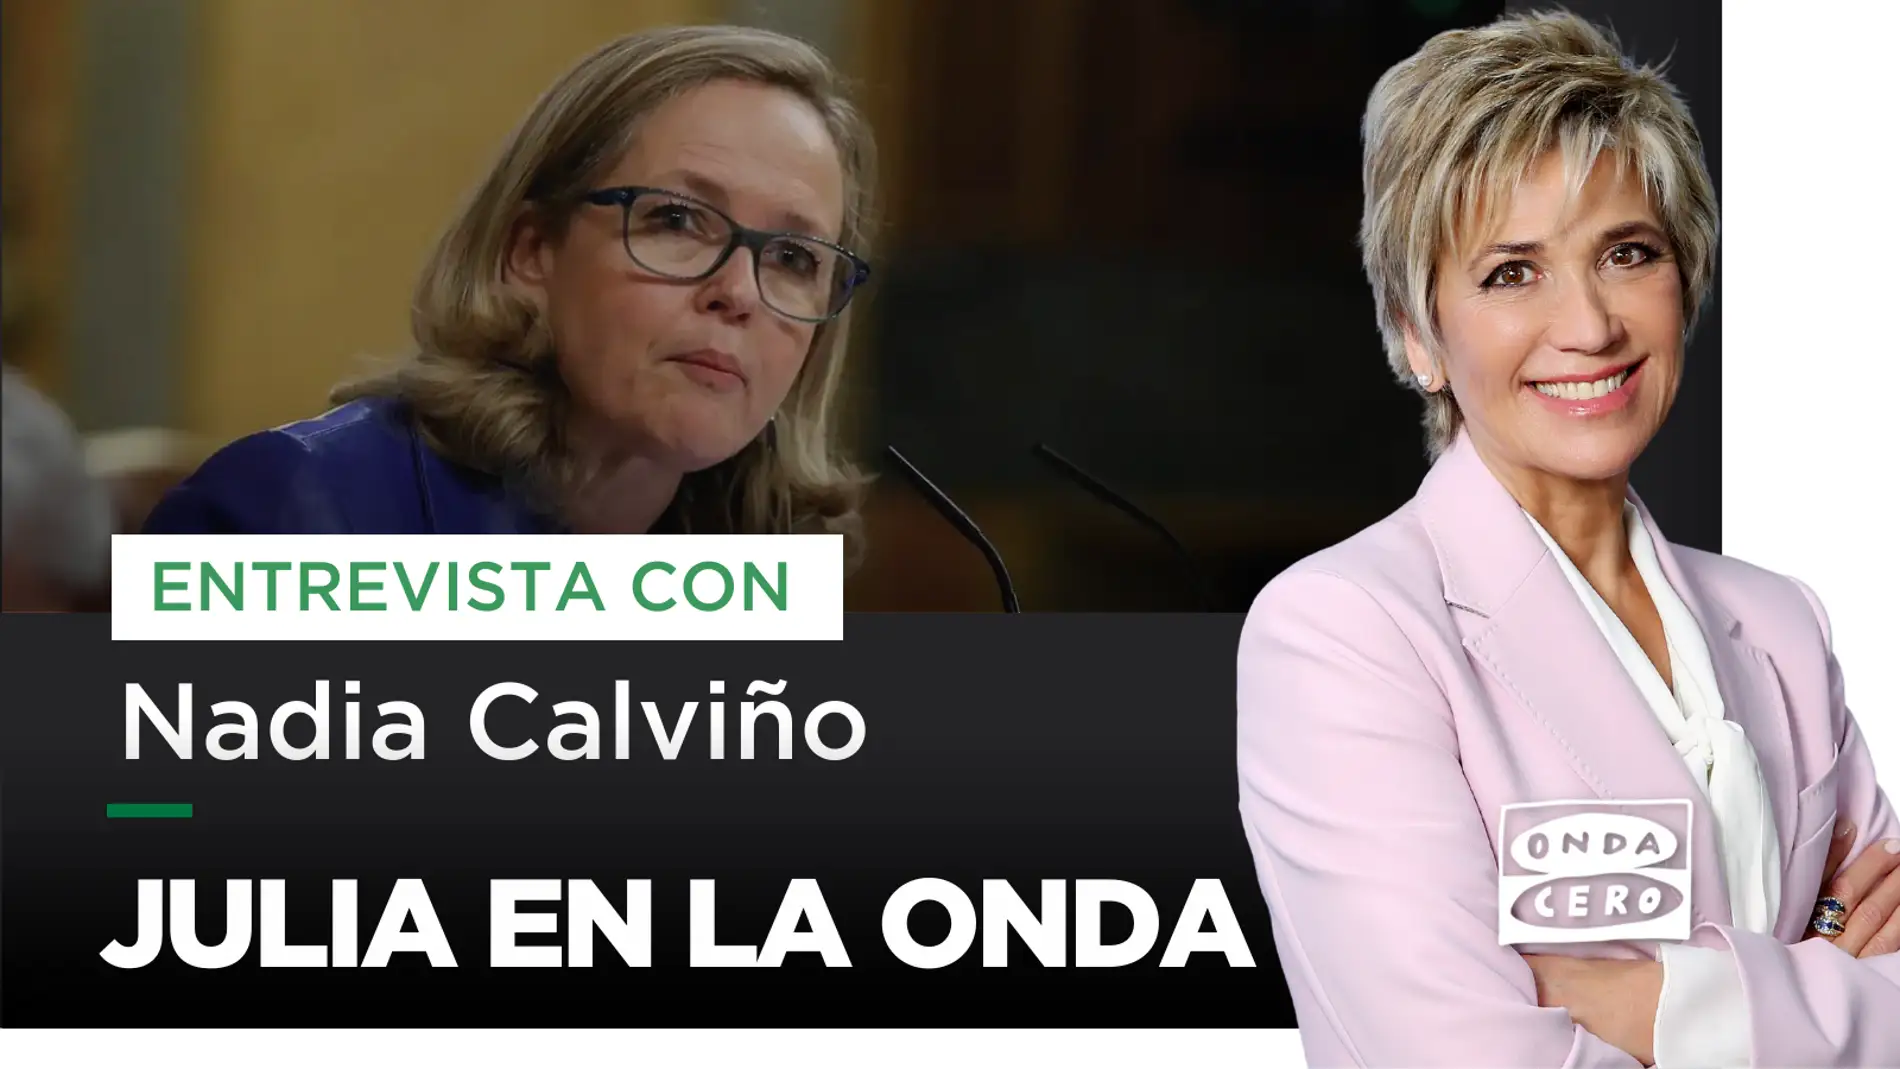 Julia Otero entrevista este jueves a Nadia Calviño en 'Julia en la Onda'